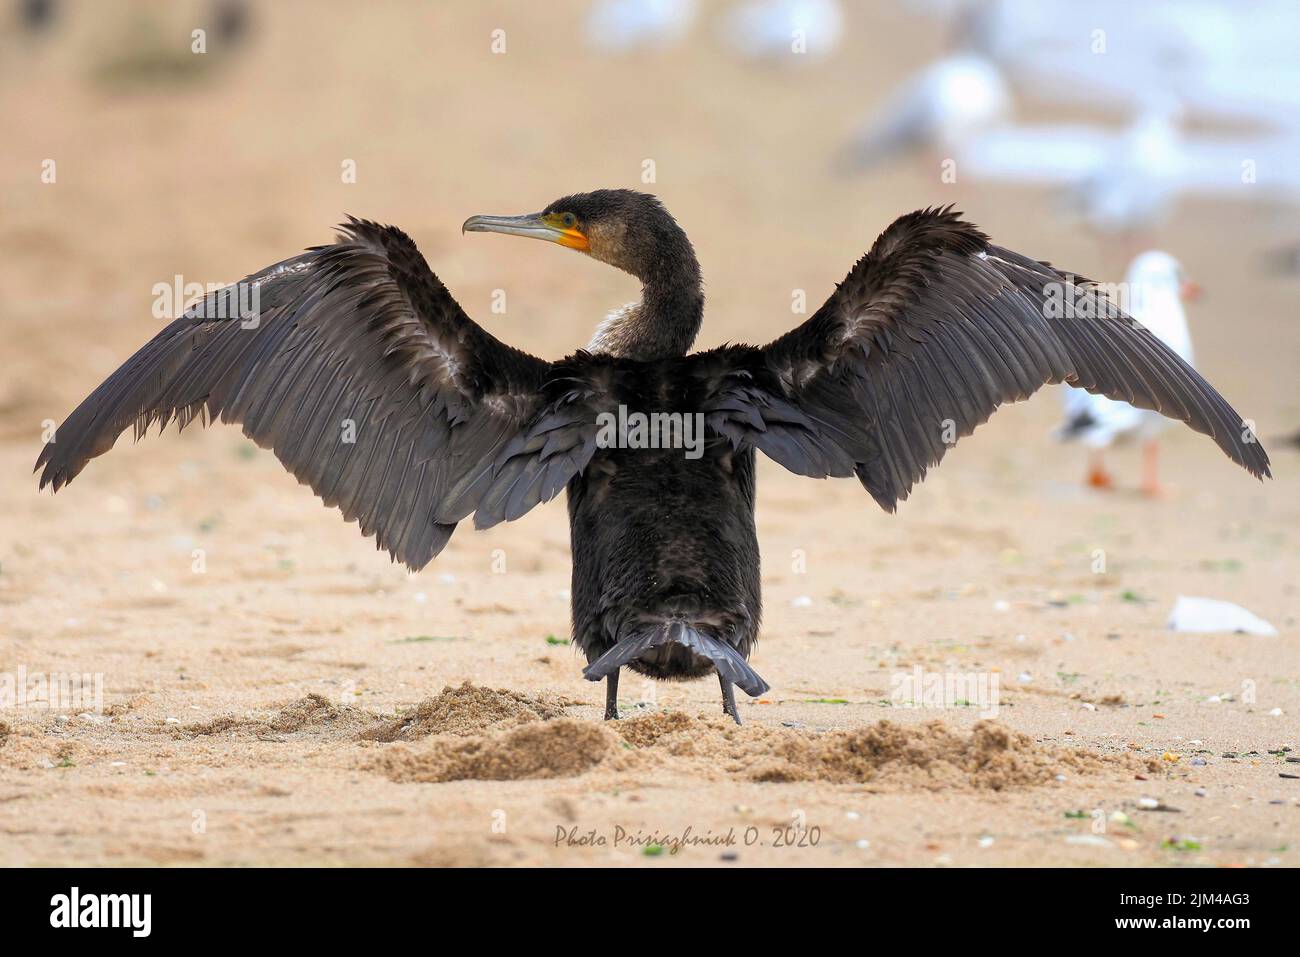 Un uccello con piume nere e becco affilato in piedi su un terreno sabbioso con ampie ali aperte Foto Stock